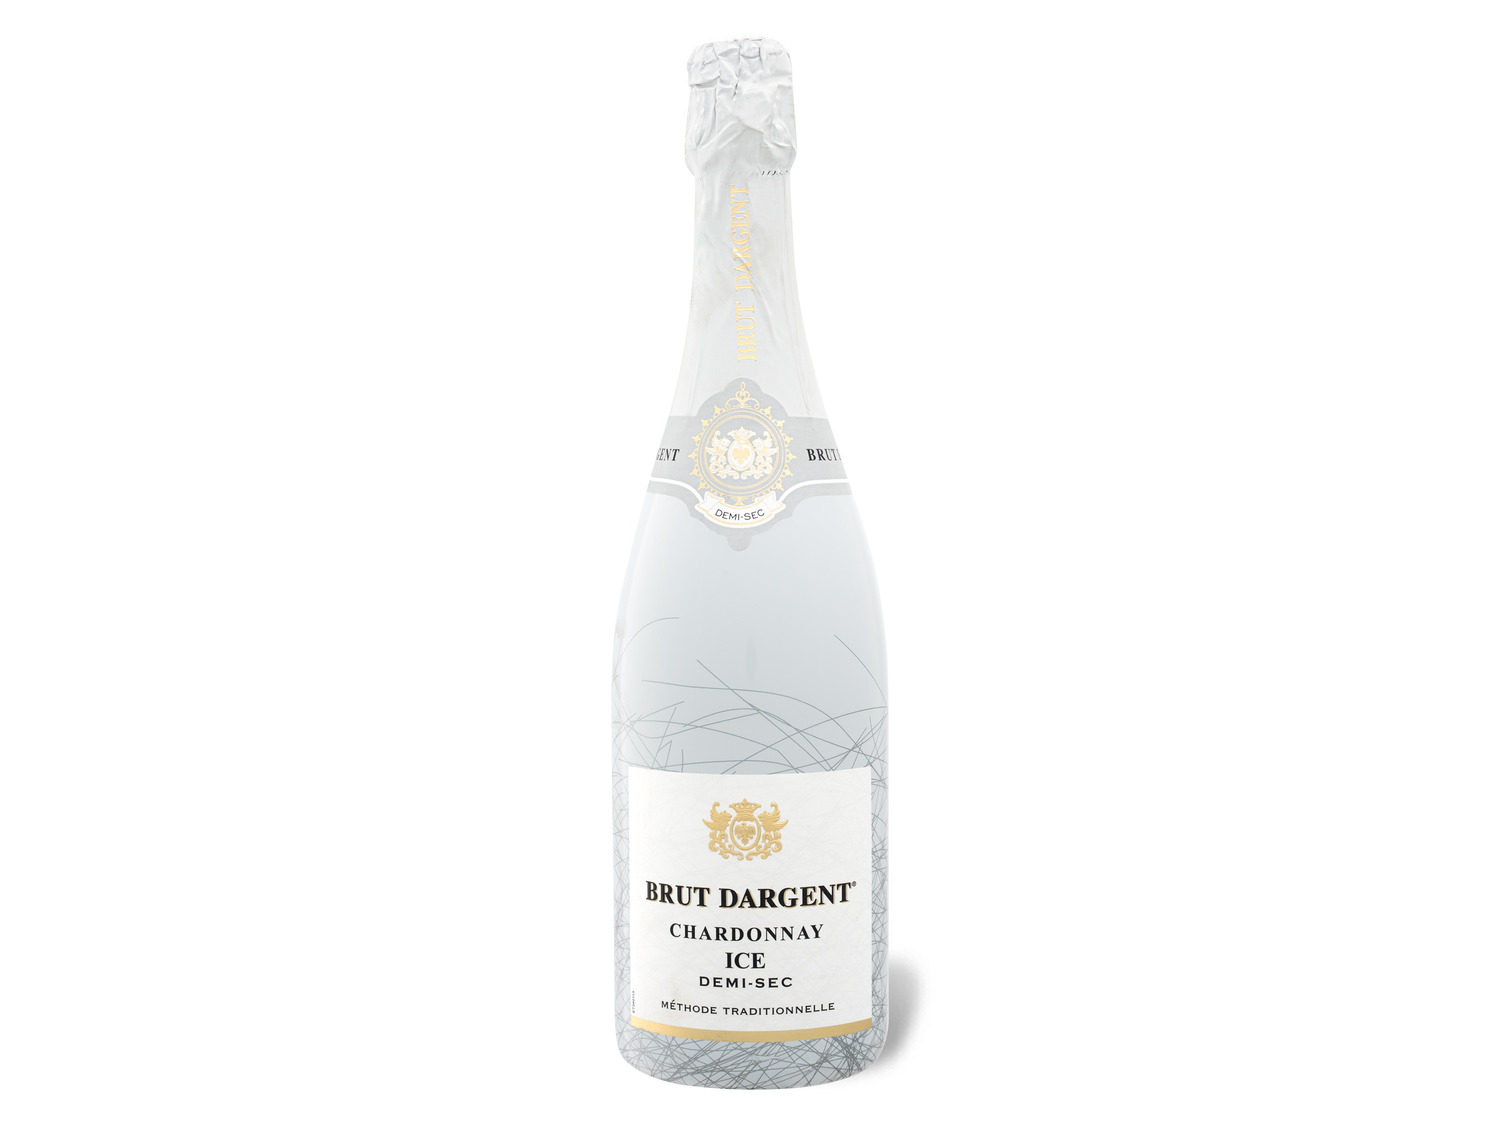 Chardonnay Dargent Brut halbtrocken, Ice Schaumwe… Sekt